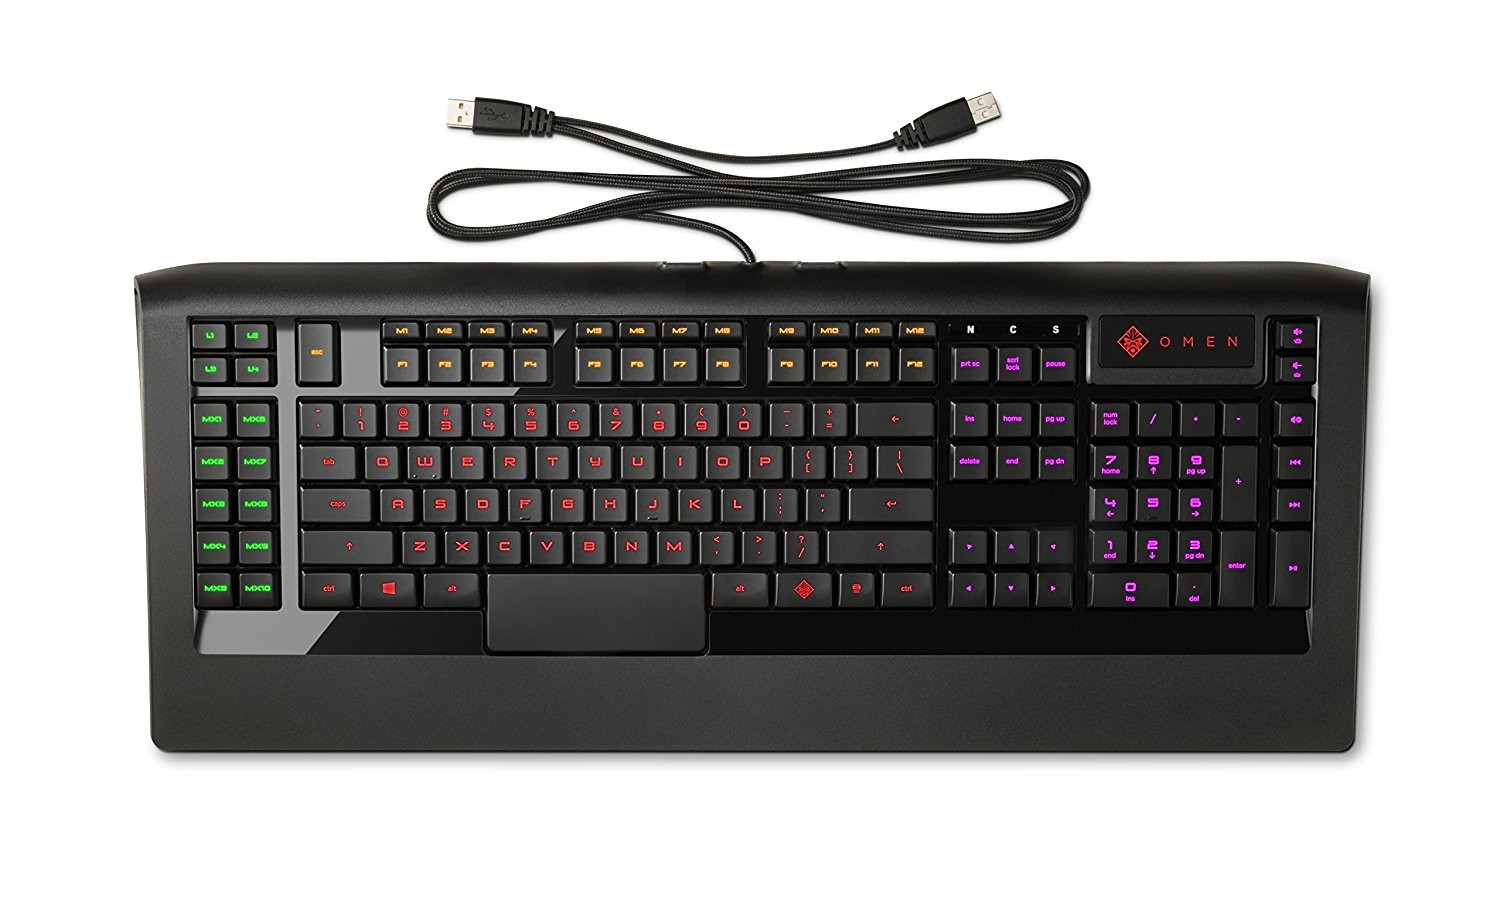 HP OMEN X7Z97AA Gaming Keyboard by SteelSeries